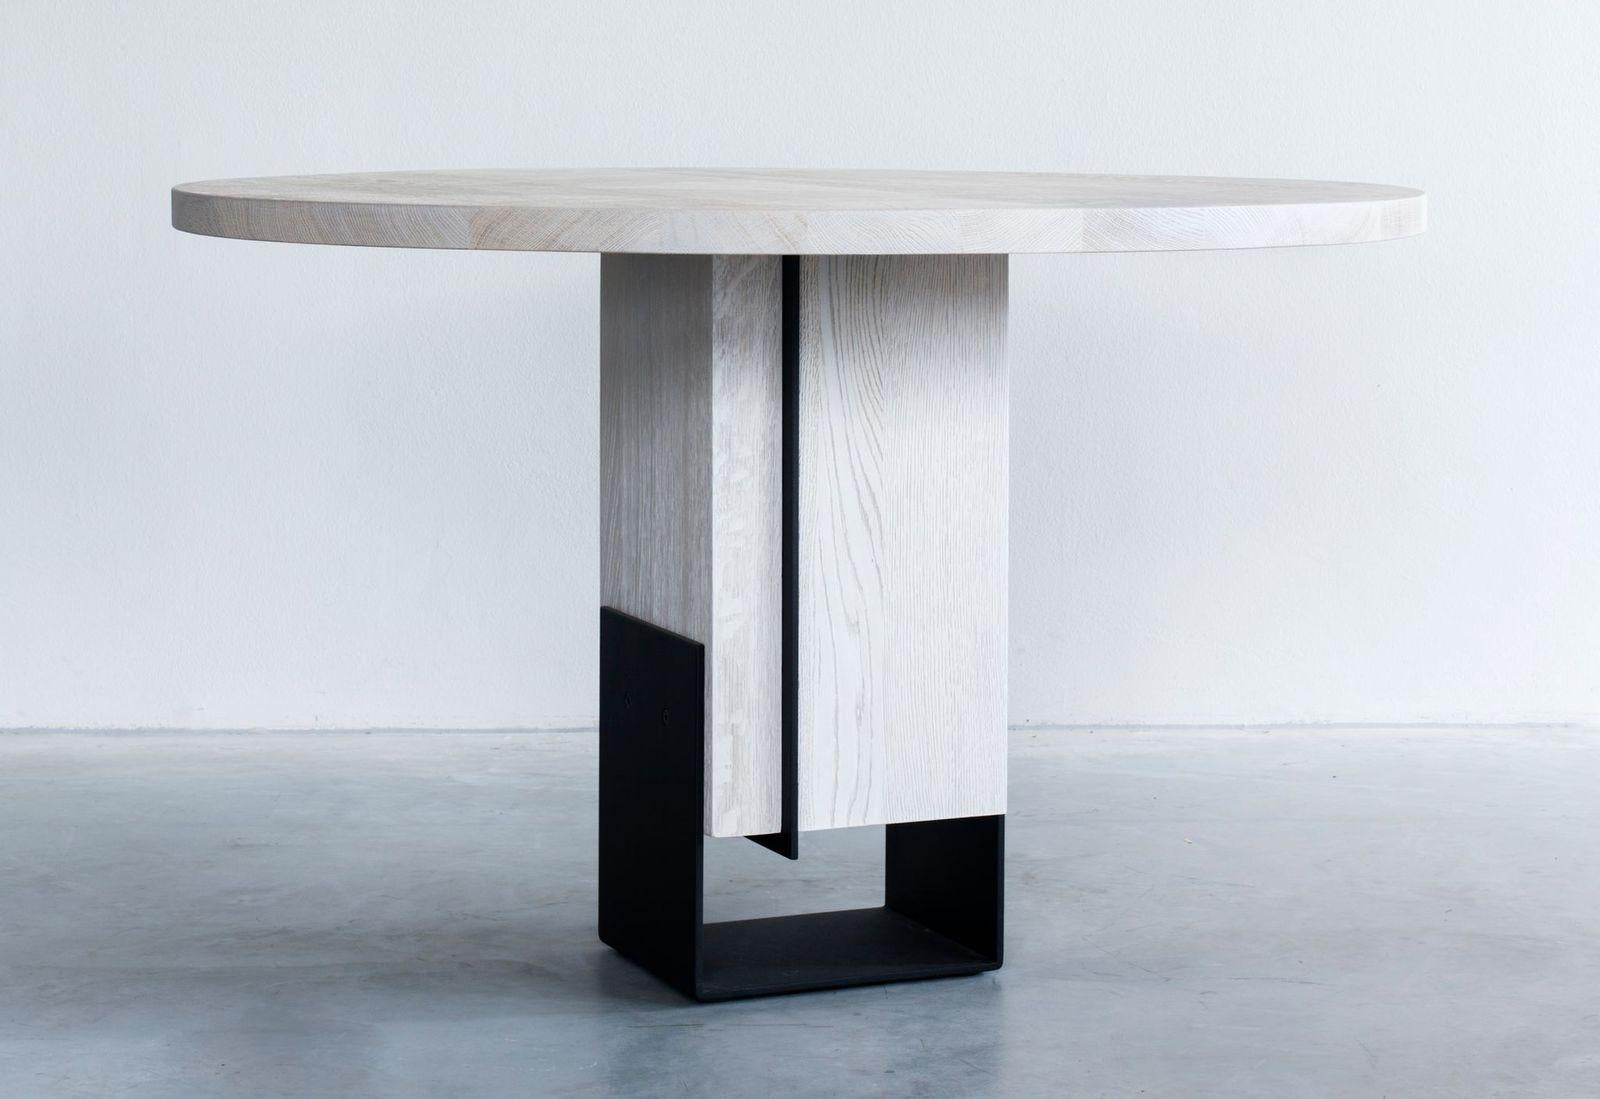 Table de salle à manger ronde Kitale par Van Rossum
Dimensions : D120 x W120 x H75 cm
MATERIAL : Chêne, acier.

Le bois est disponible dans toutes les couleurs standard de Van Rossum, ou dans une finition assortie à l'échantillon du client.
Les